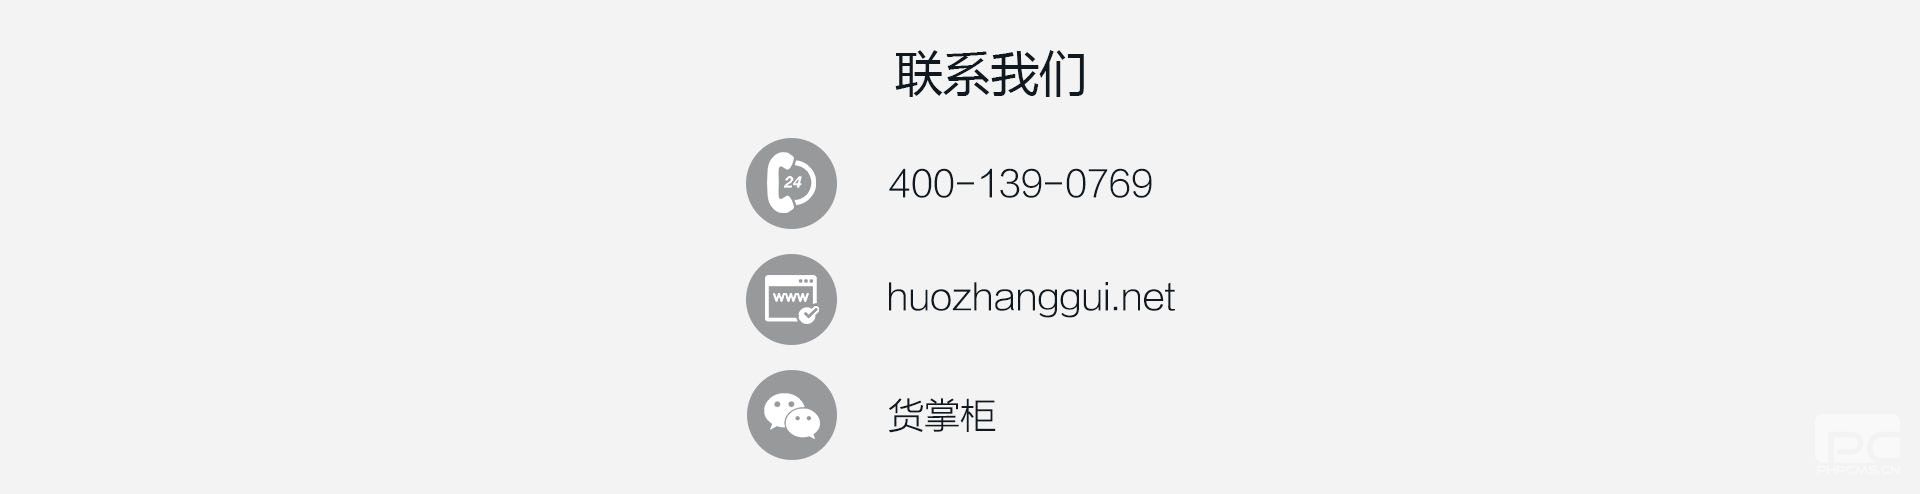 货掌柜司机解决方案7（www.huozhanggui.net）